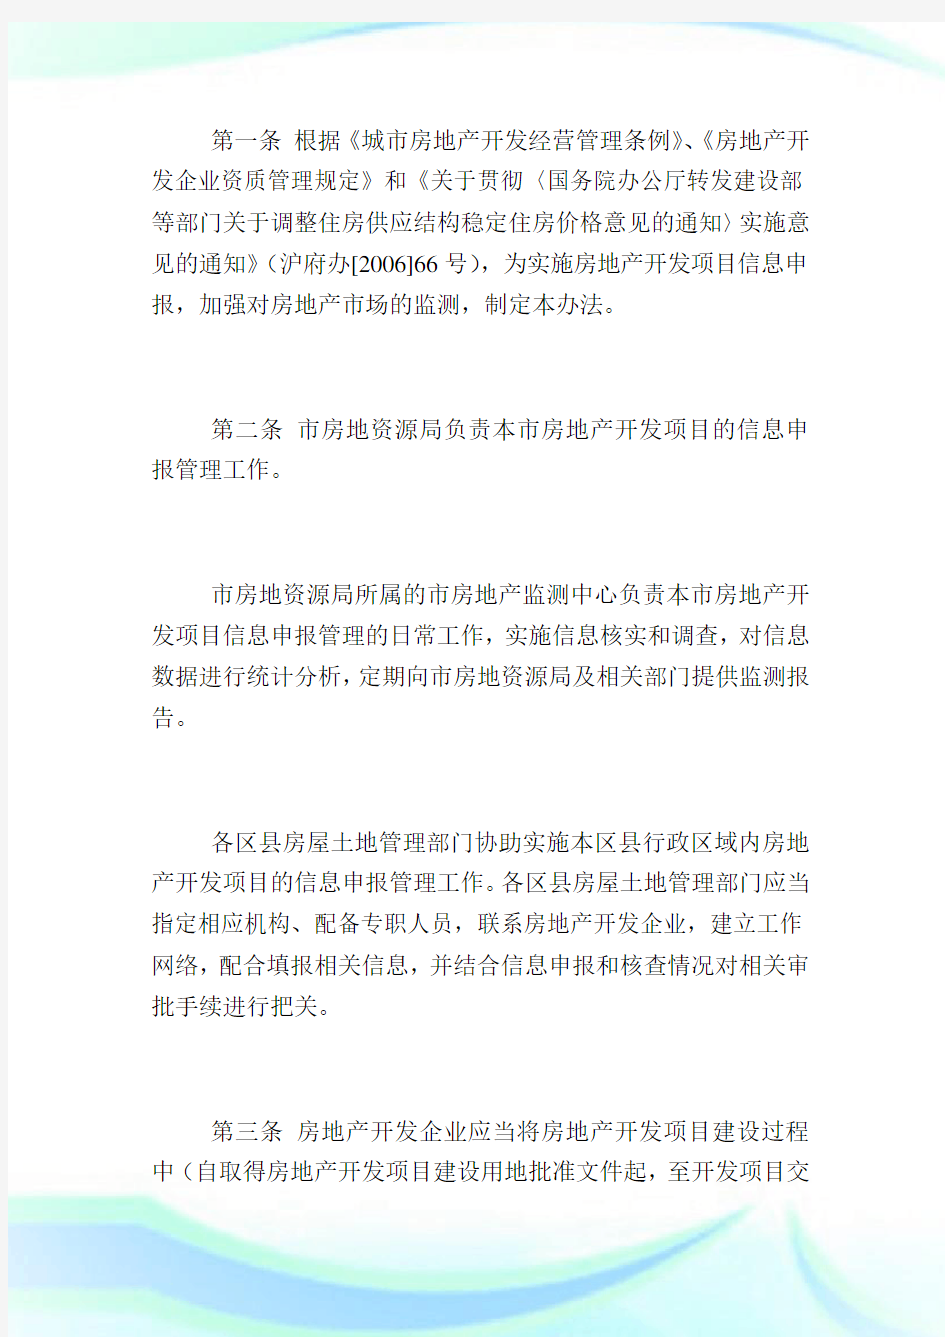 上海市房屋土地资源管理局印发《上海市房地产开发项目信息申报管理办法》.doc